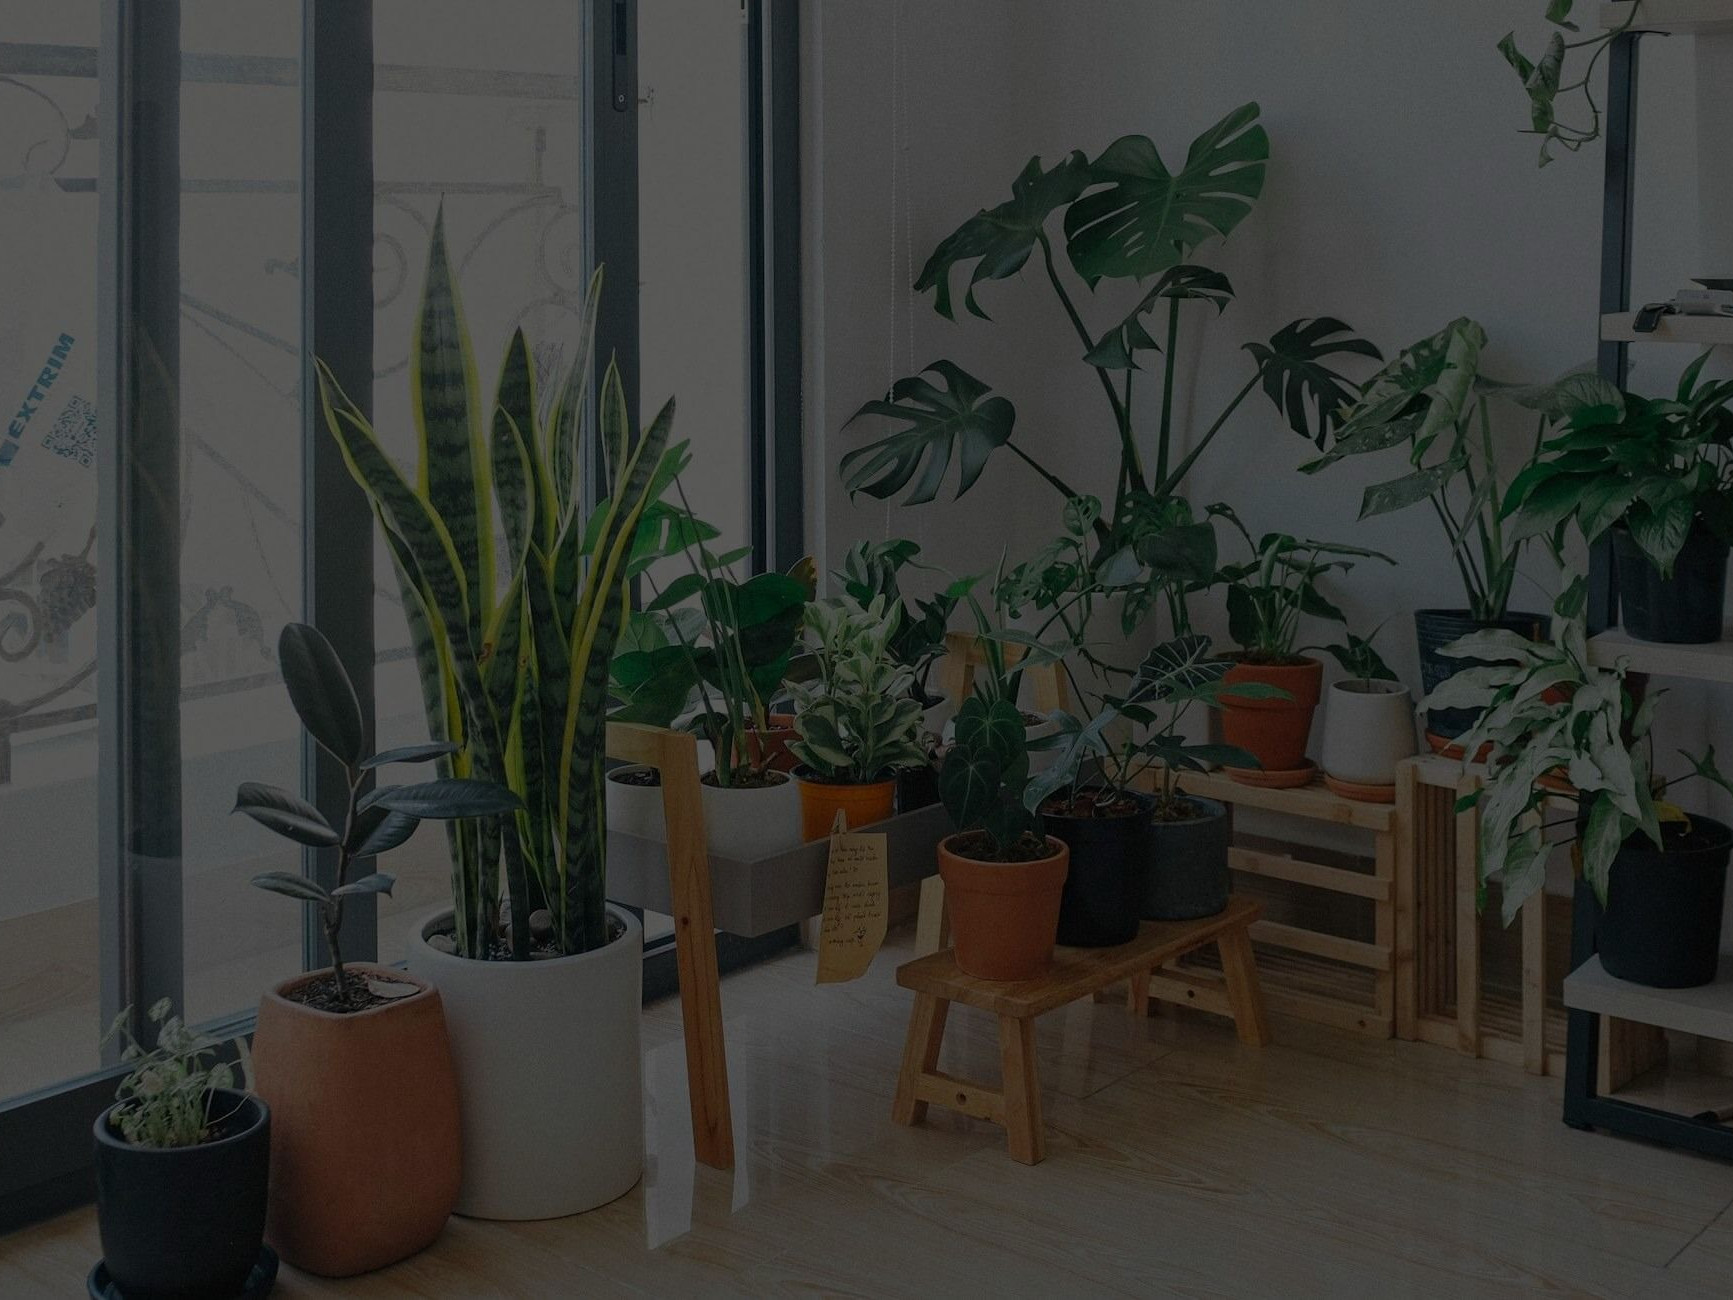 Where to Buy Indoor Plants Online